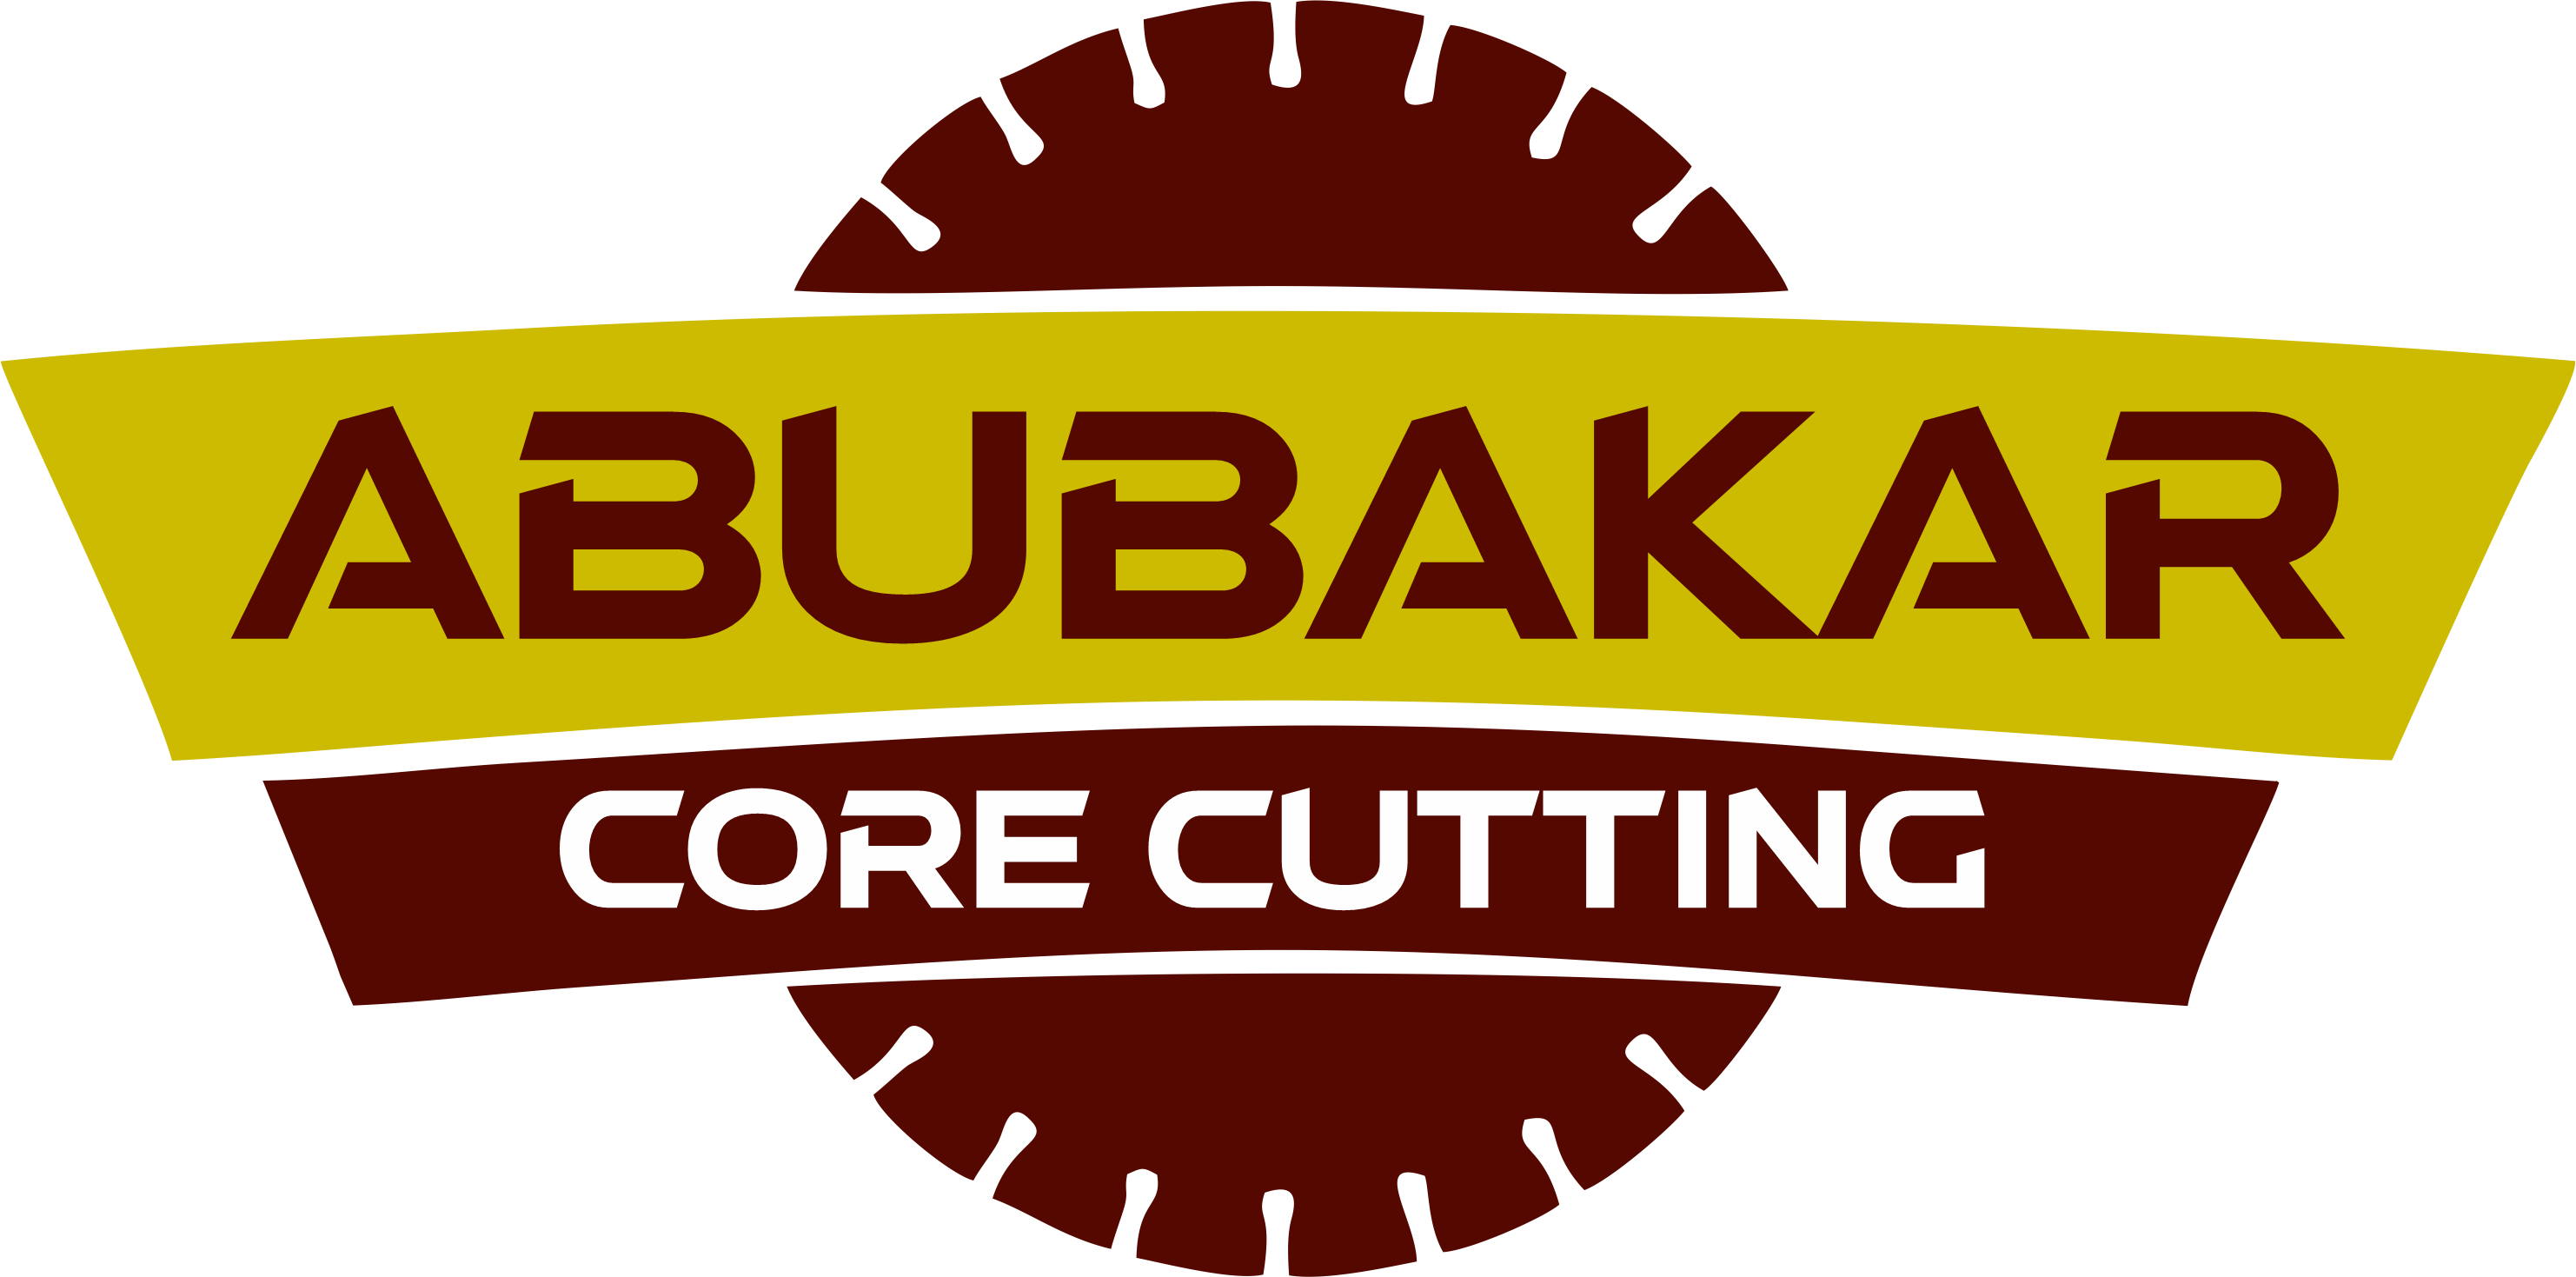 Core Cutting Contractors Dubai